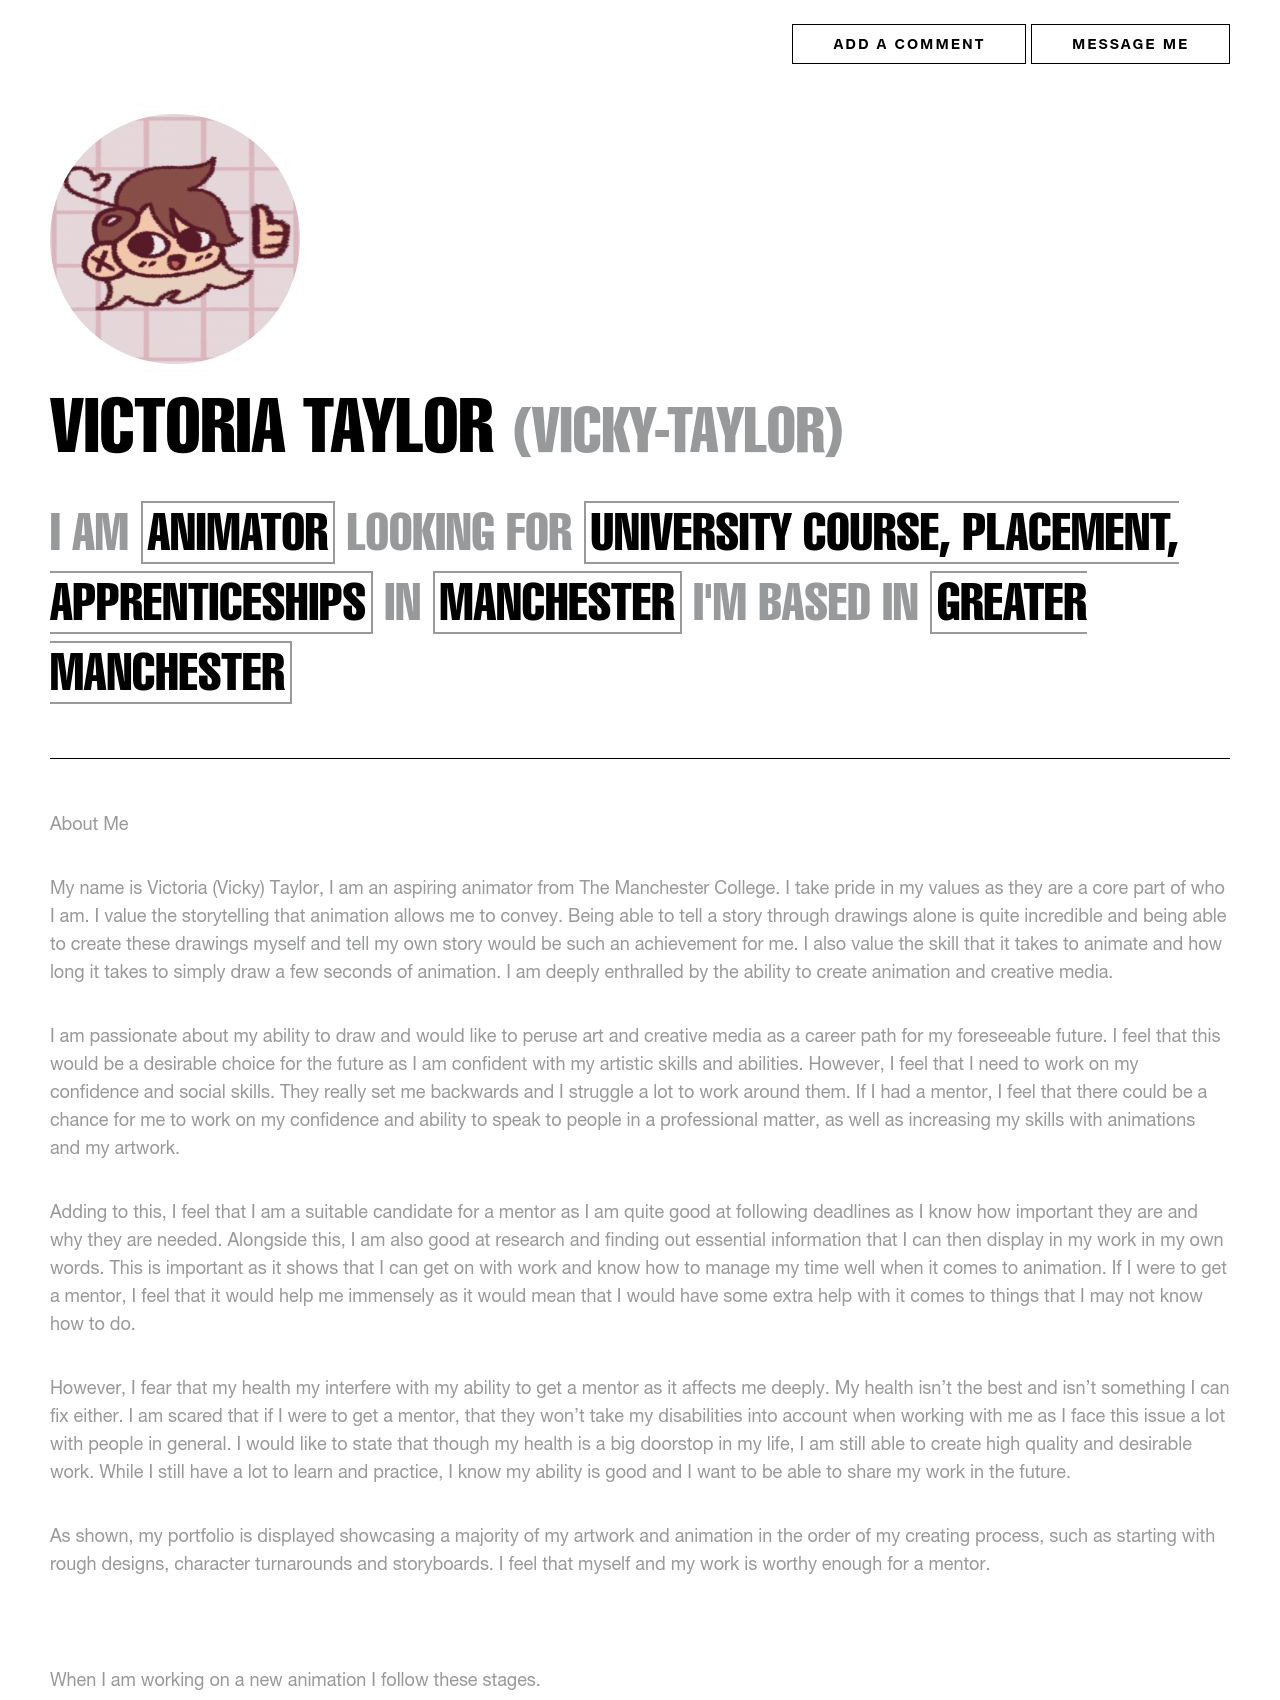 Victoria Taylor